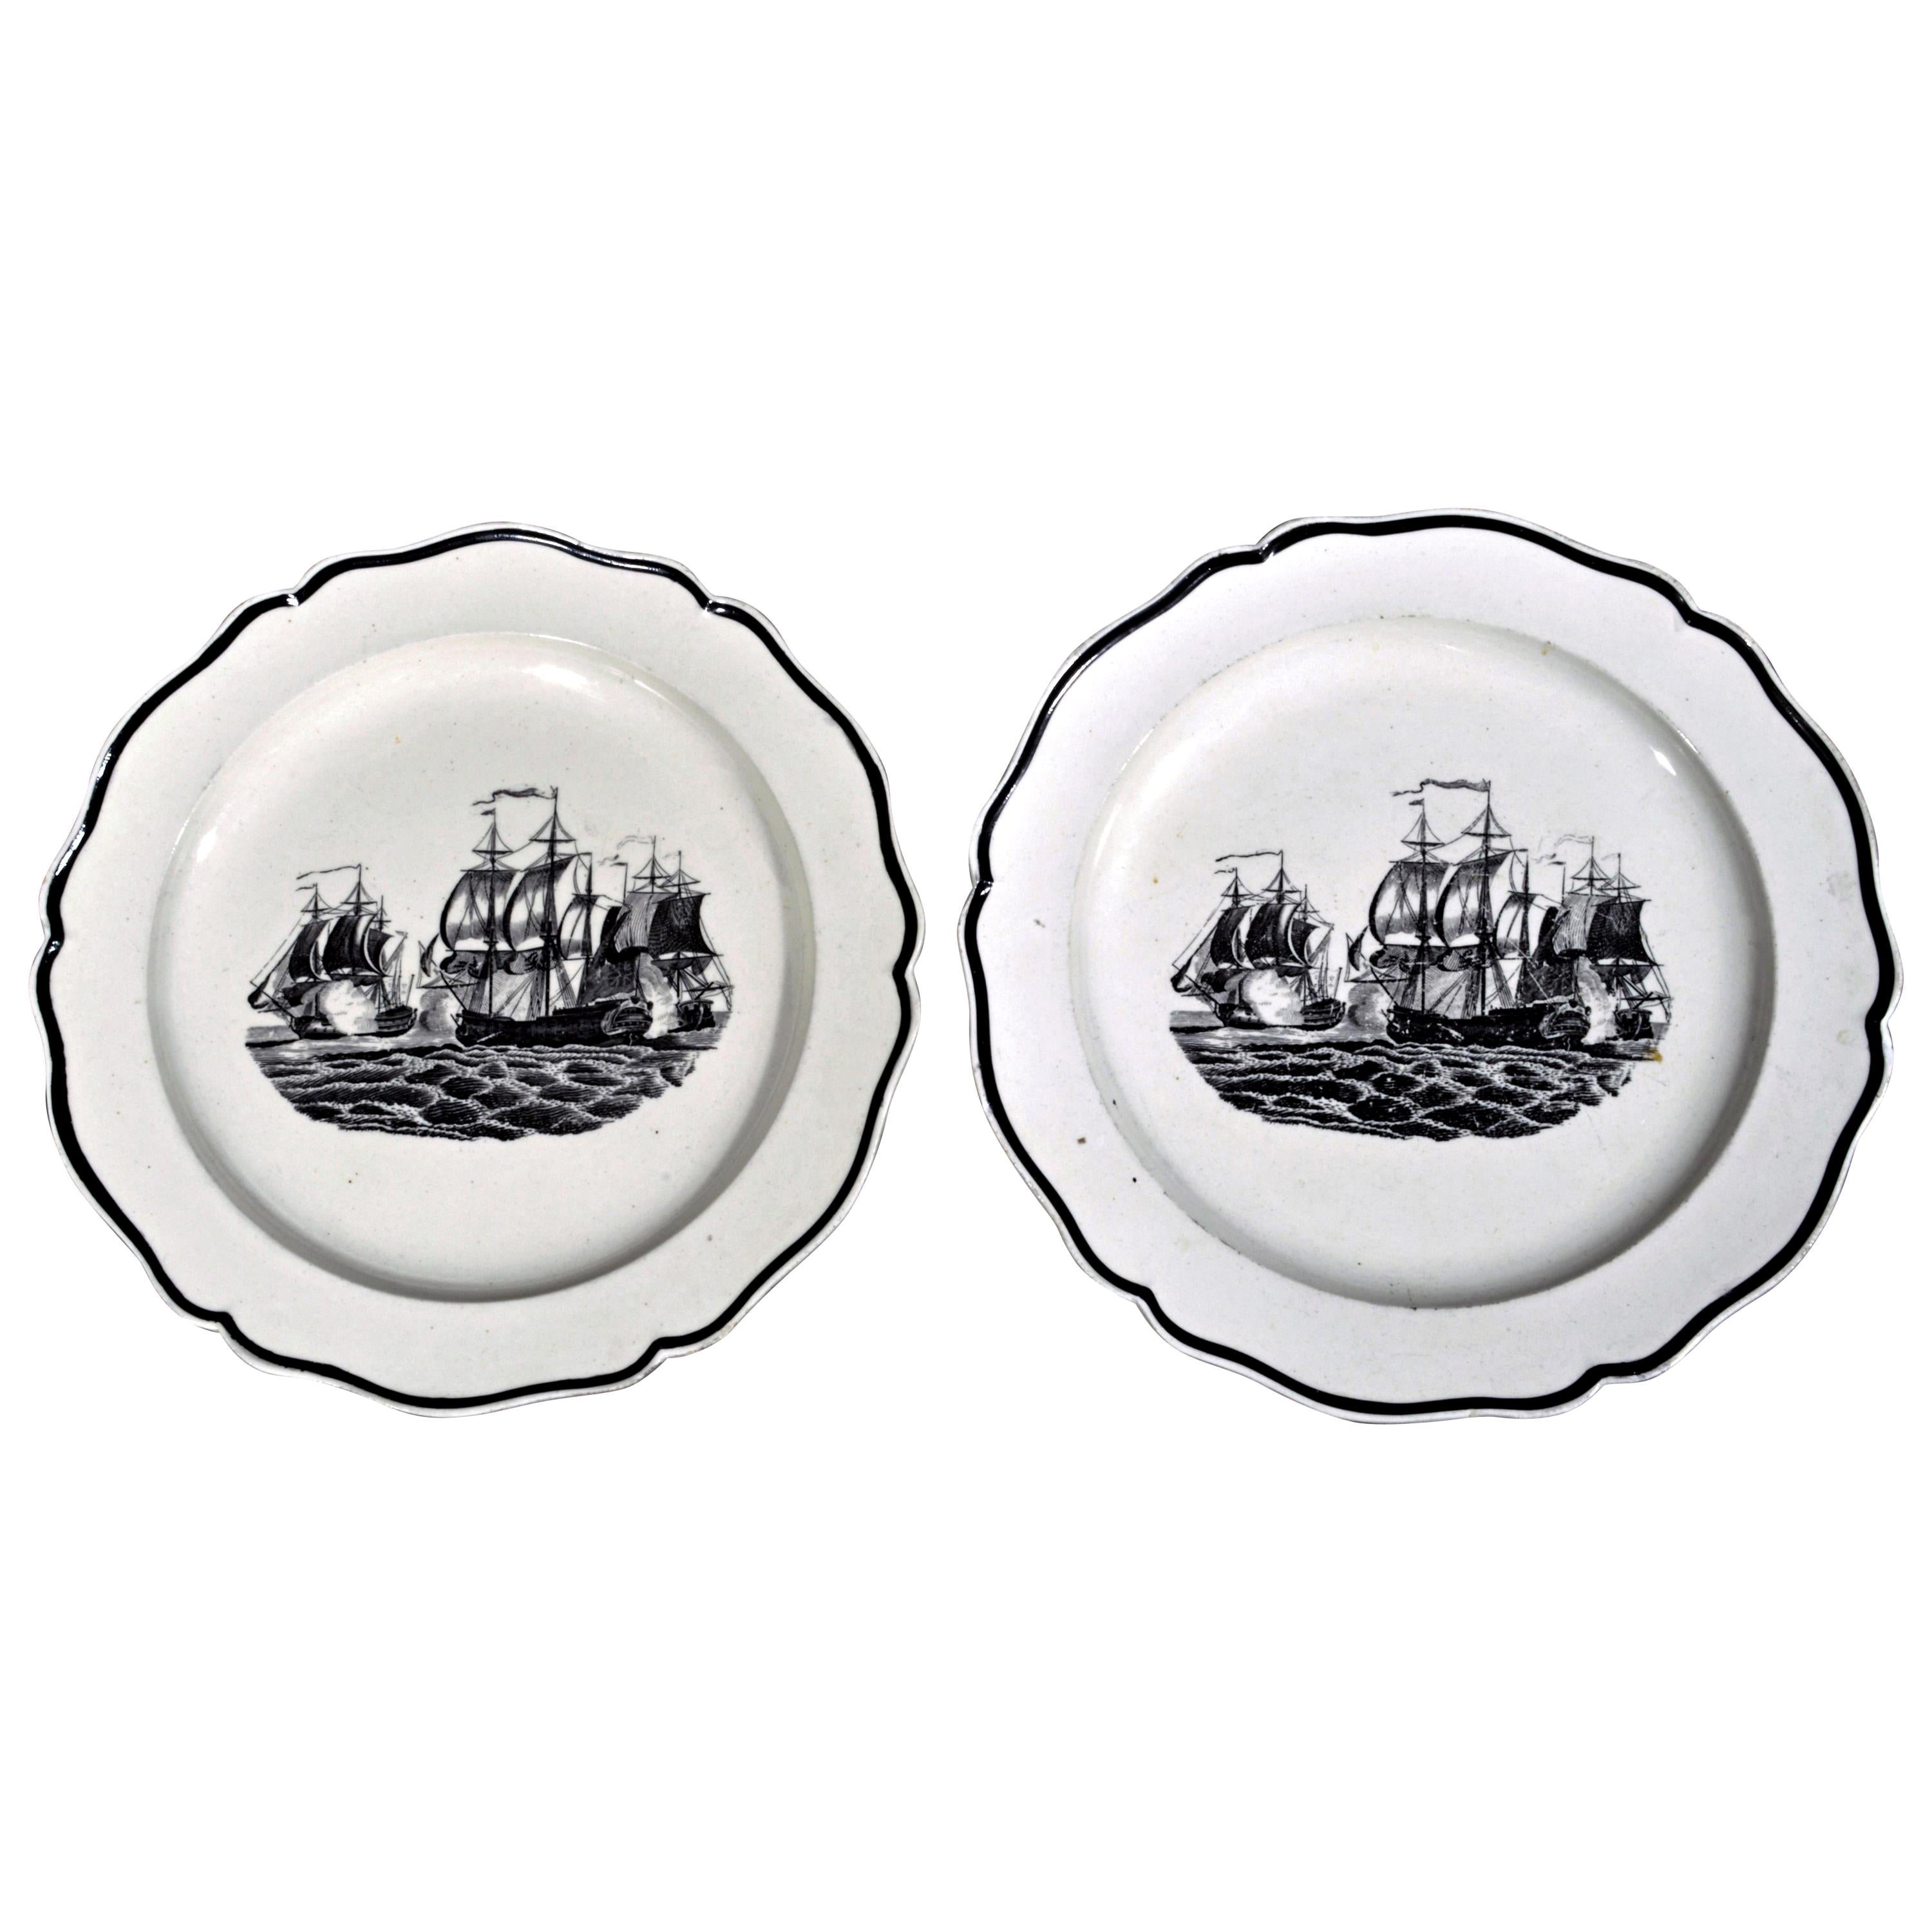 Assiettes en céramique perlée de Liverpool décorées de bateaux, vers 1800